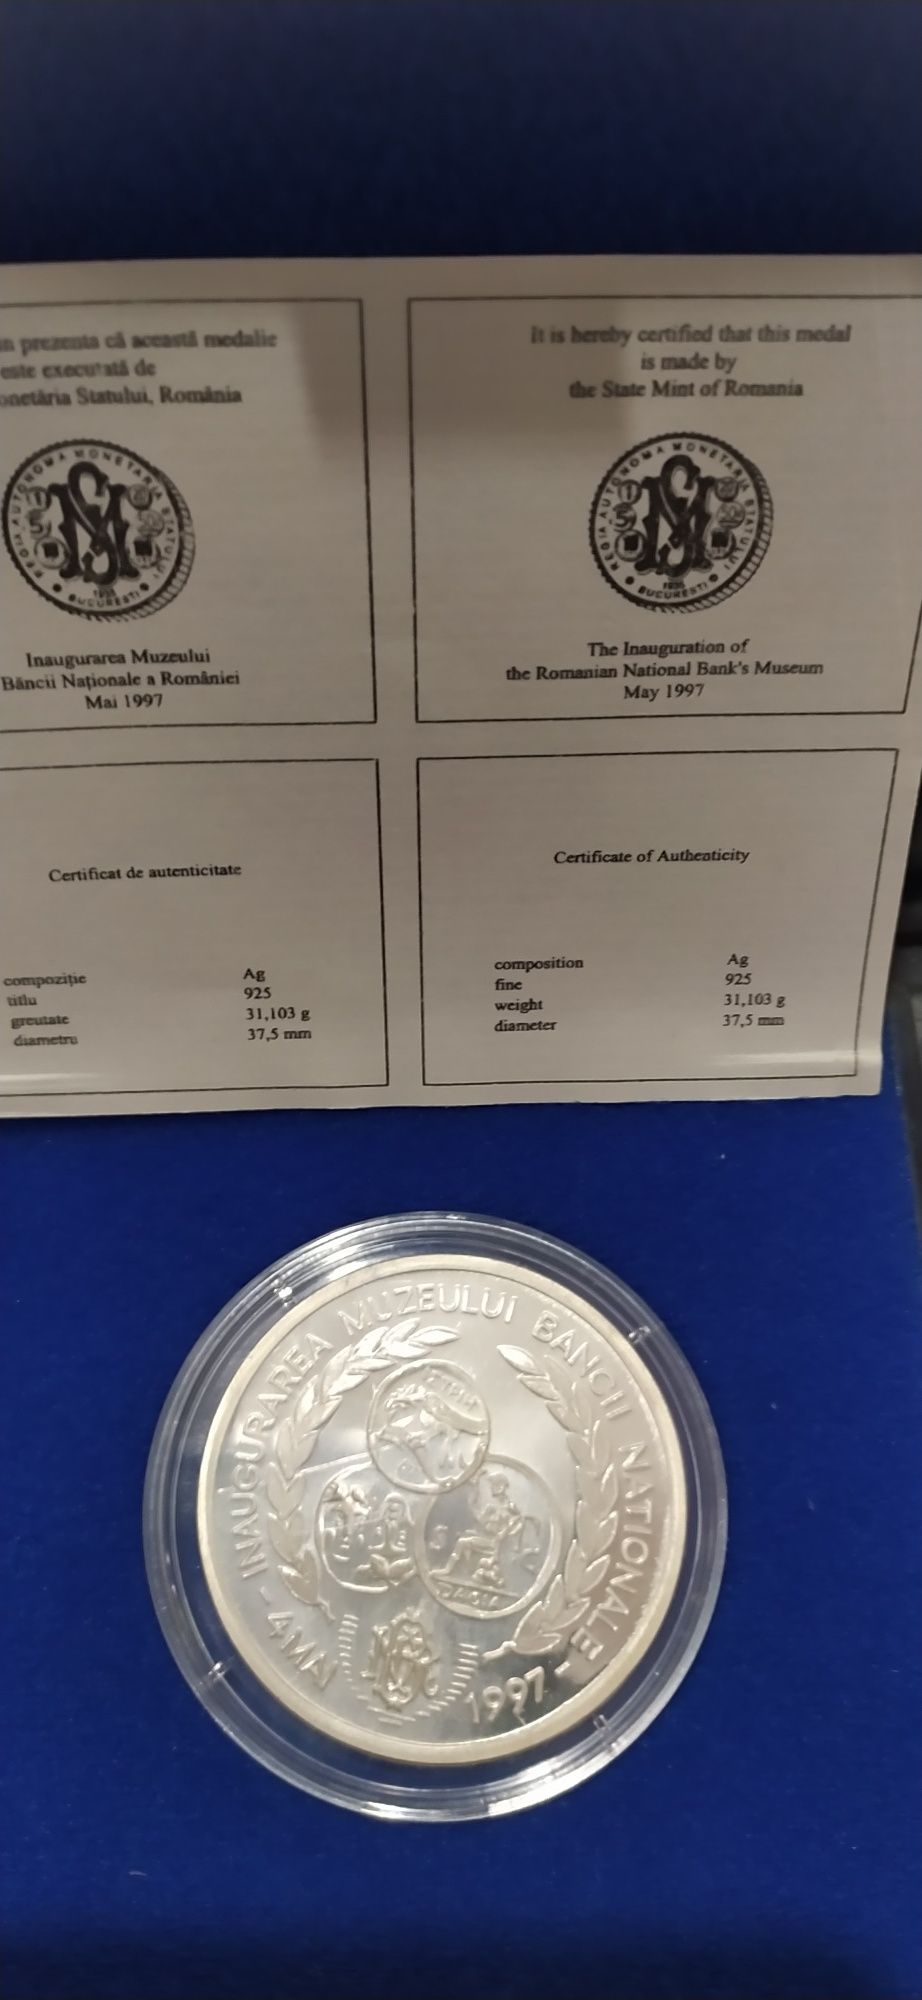 Monede de argint emise de B N R